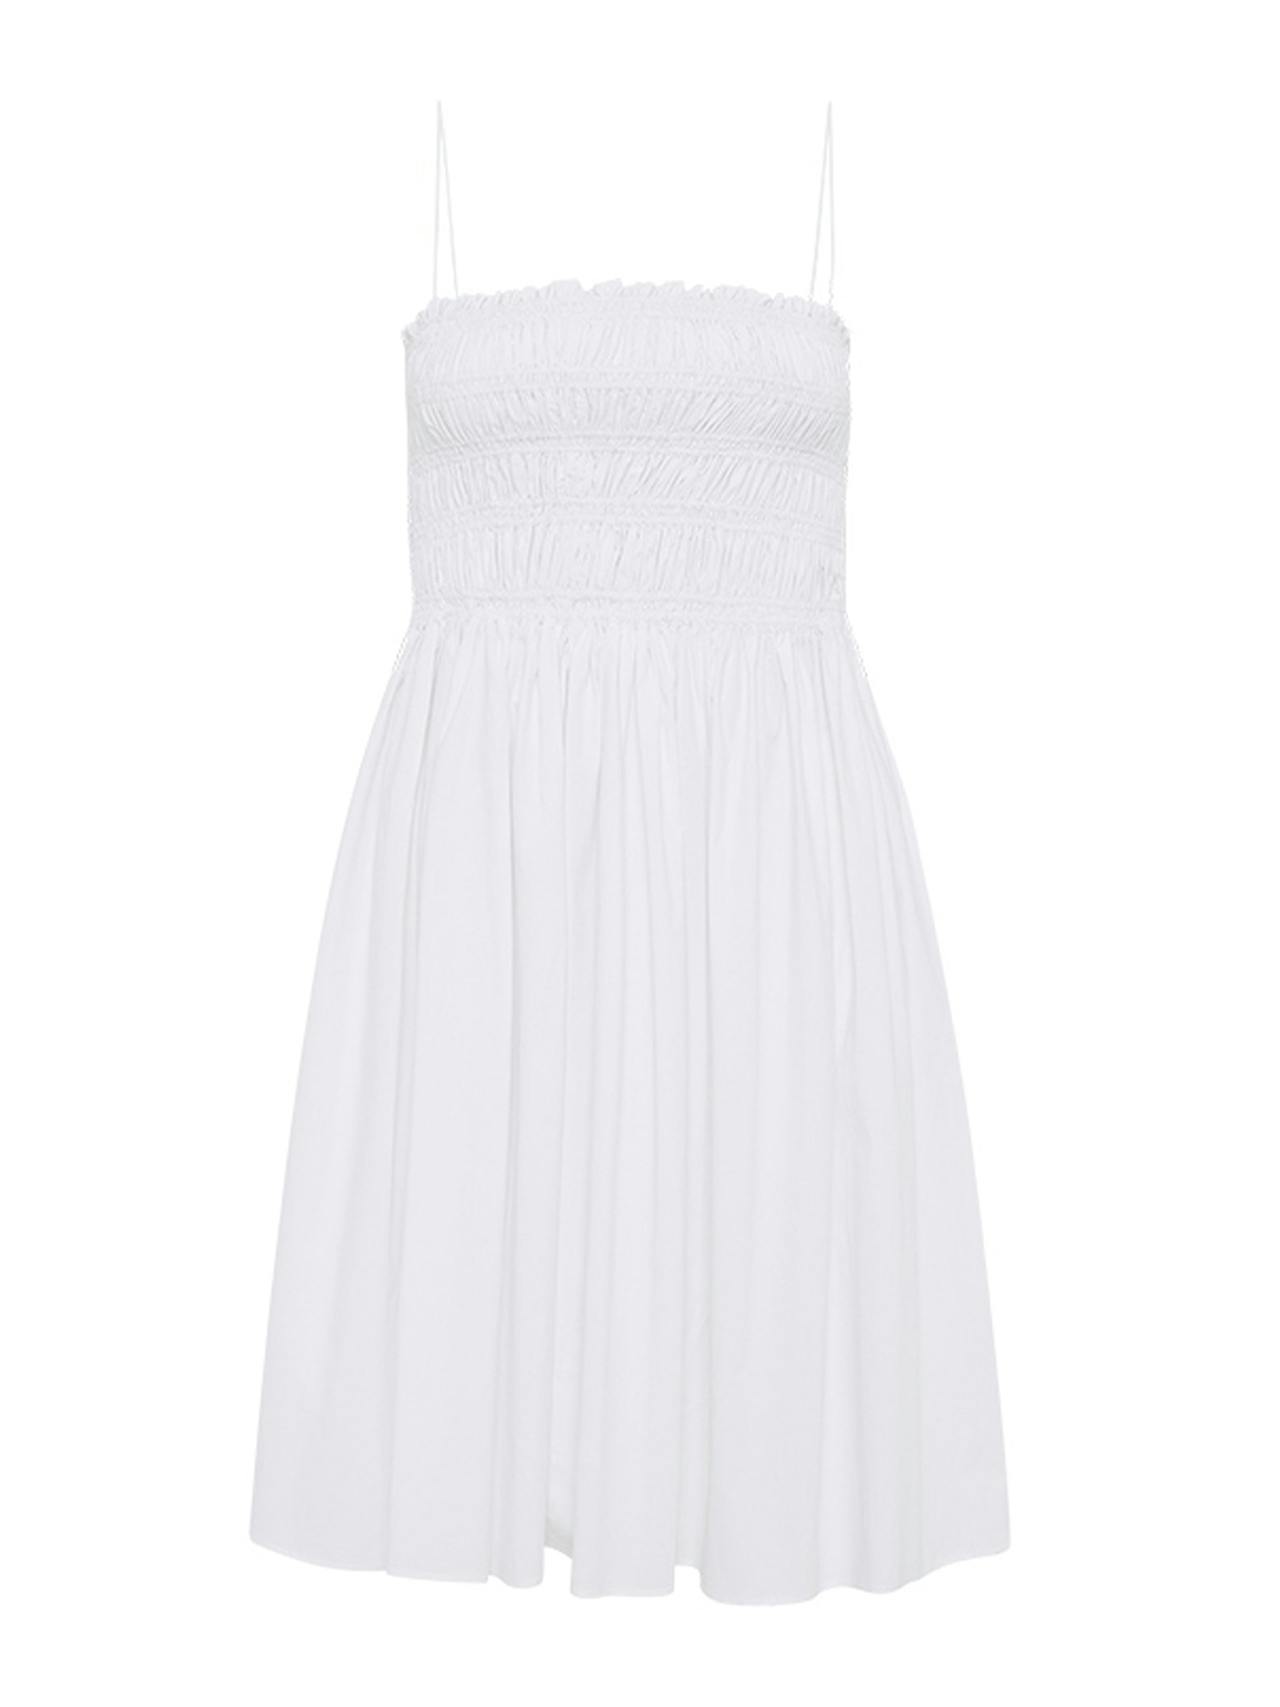 White shirred bodice mini dress